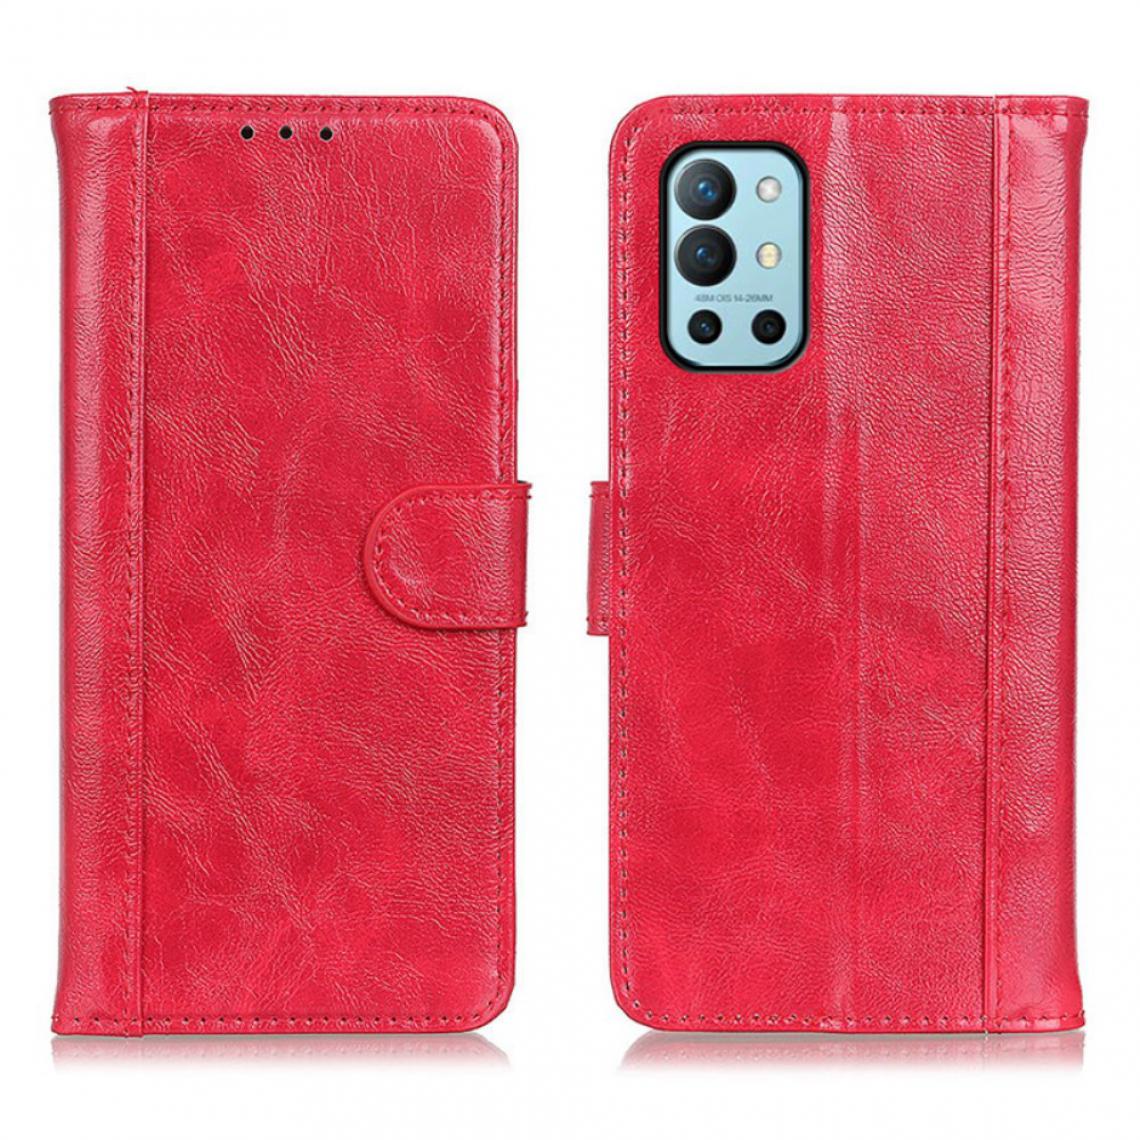 Other - Etui en PU Fragment de peau de cheval fou rouge pour votre OnePlus 9R - Coque, étui smartphone